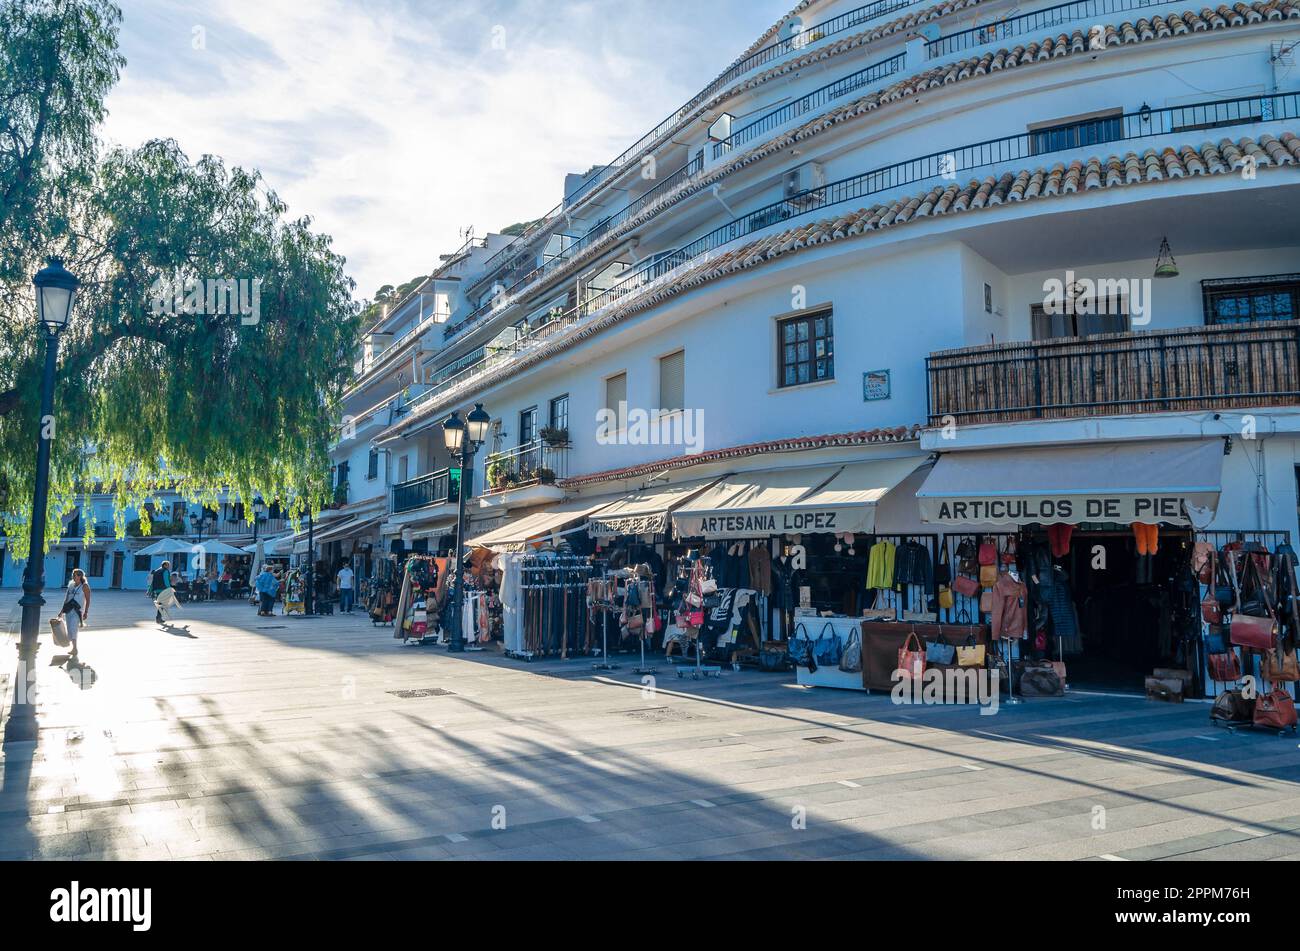 MIJAS, SPAGNA - 9 OTTOBRE 2021: Vista delle strade e dell'architettura tipica della città di Mijas, situata sulla Costa del Sol, provincia di Malaga, Andalusia, Spagna meridionale Foto Stock